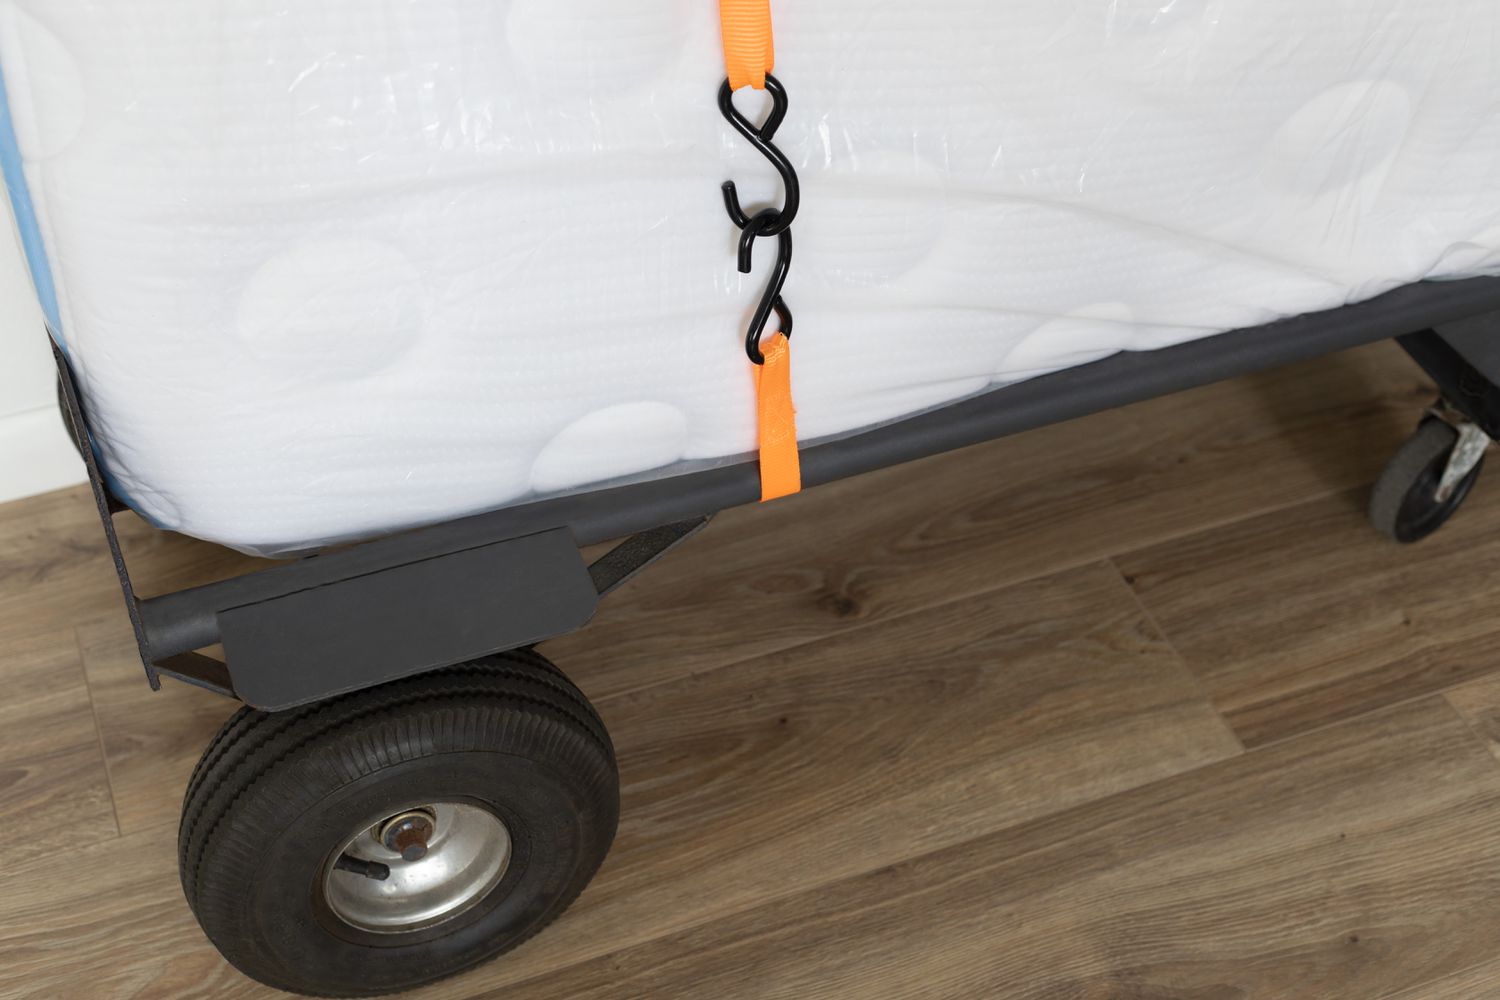 Matratze auf dem Möbelwagen platziert und mit orangefarbenen Spanngurten für den Umzug gesichert